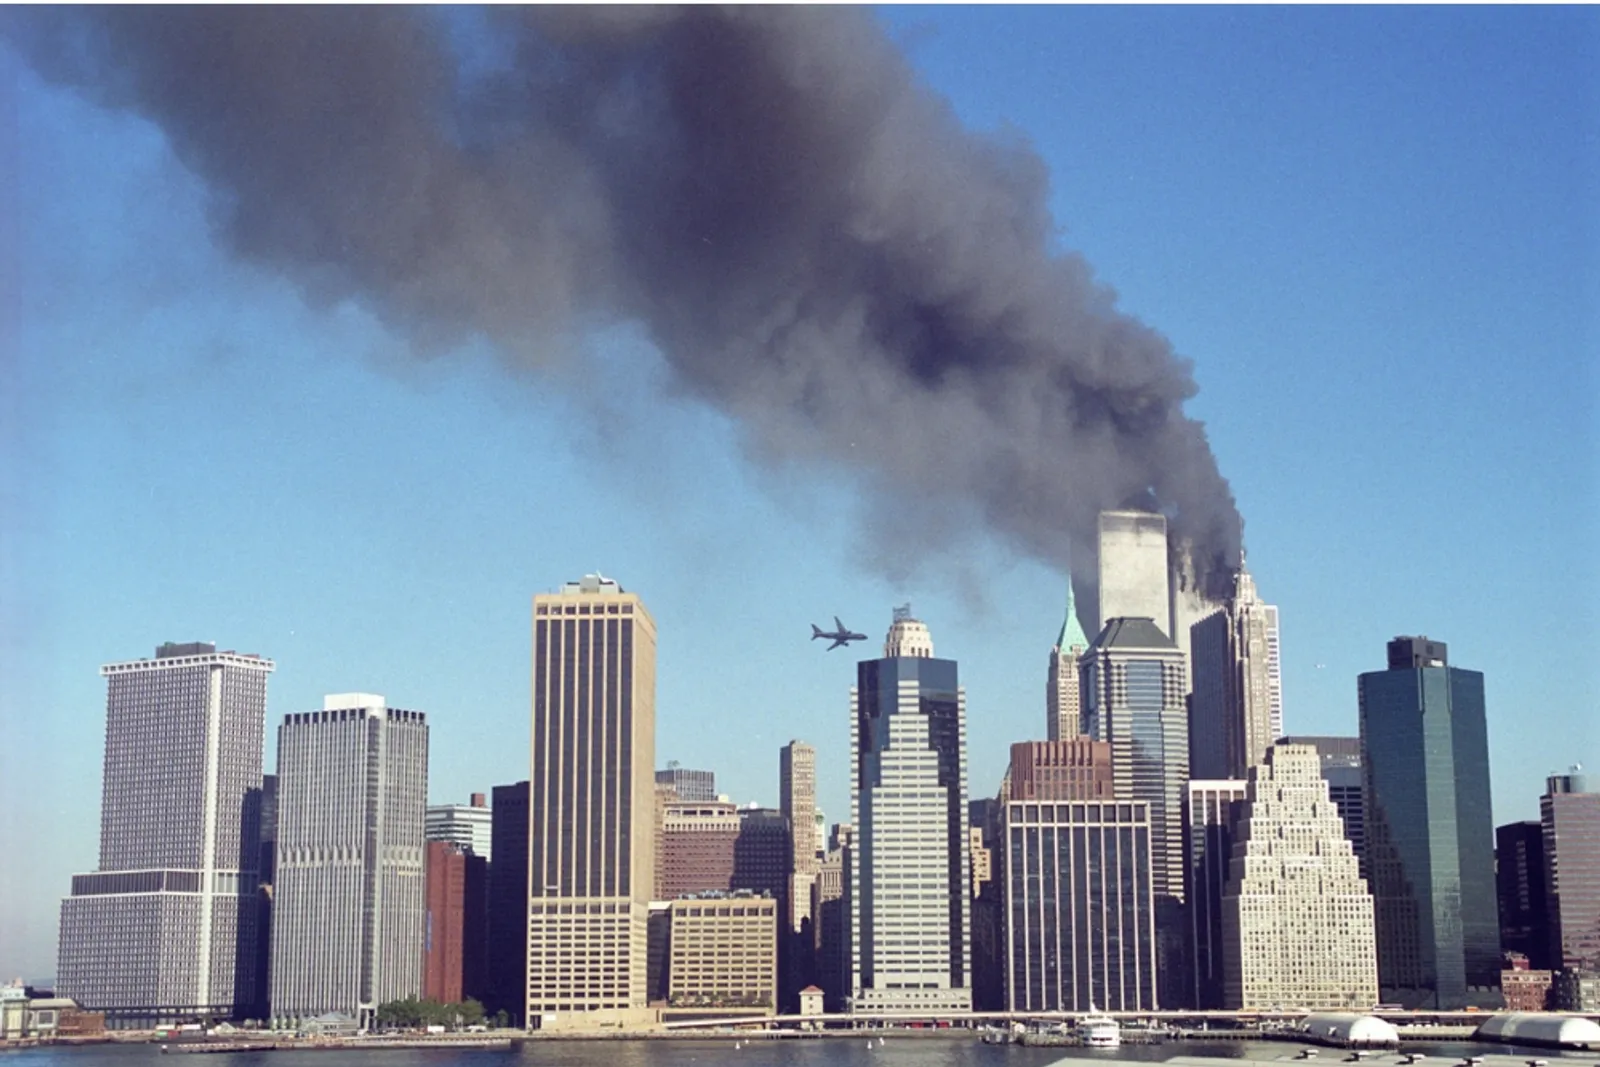 20 Tahun Berlalu, Ini Deretan Foto Paling Memorable dari Kejadian 9/11